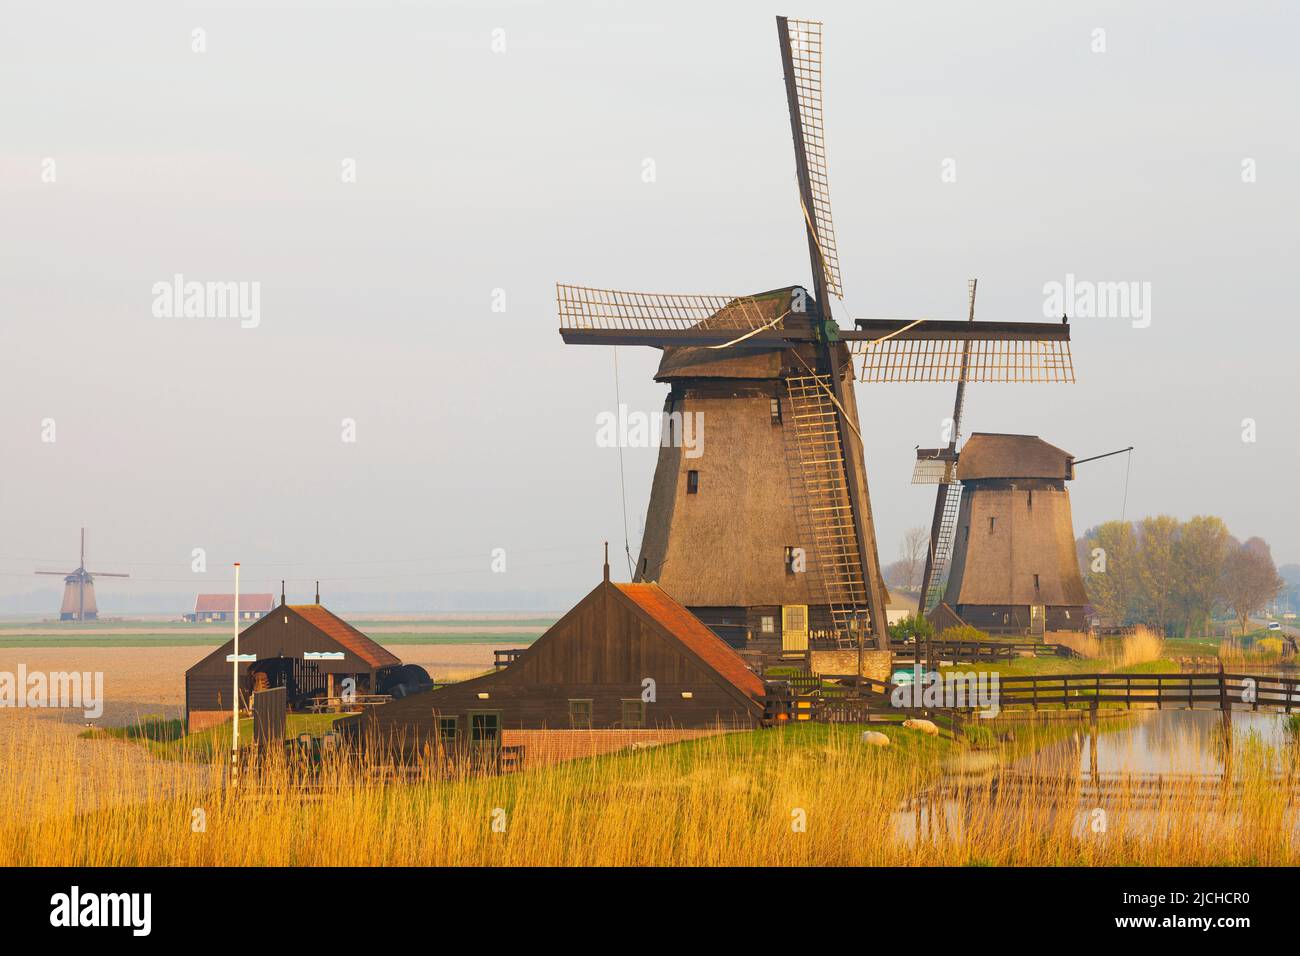 Traditional windmills beside a canal, Schermerhorn, North Holland, Netherlands Stock Photo